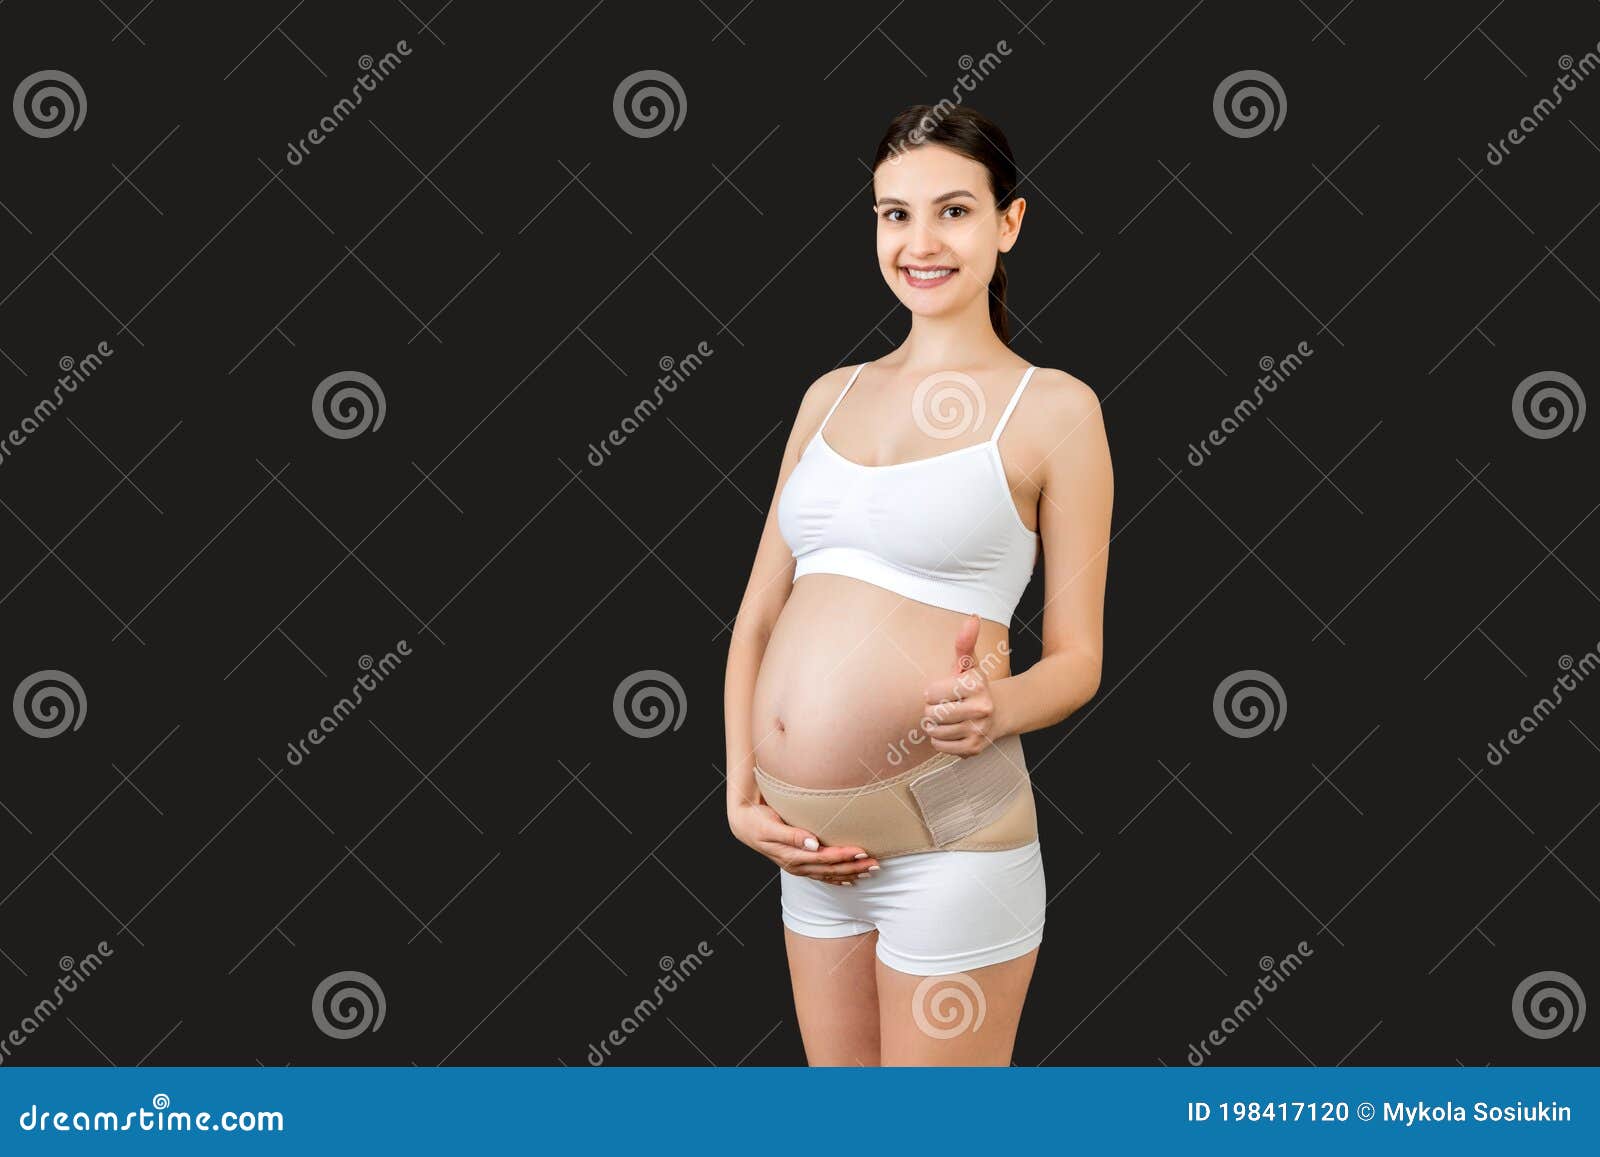 Generic Ceinture de Grossesse pour femme enceinte soutien de